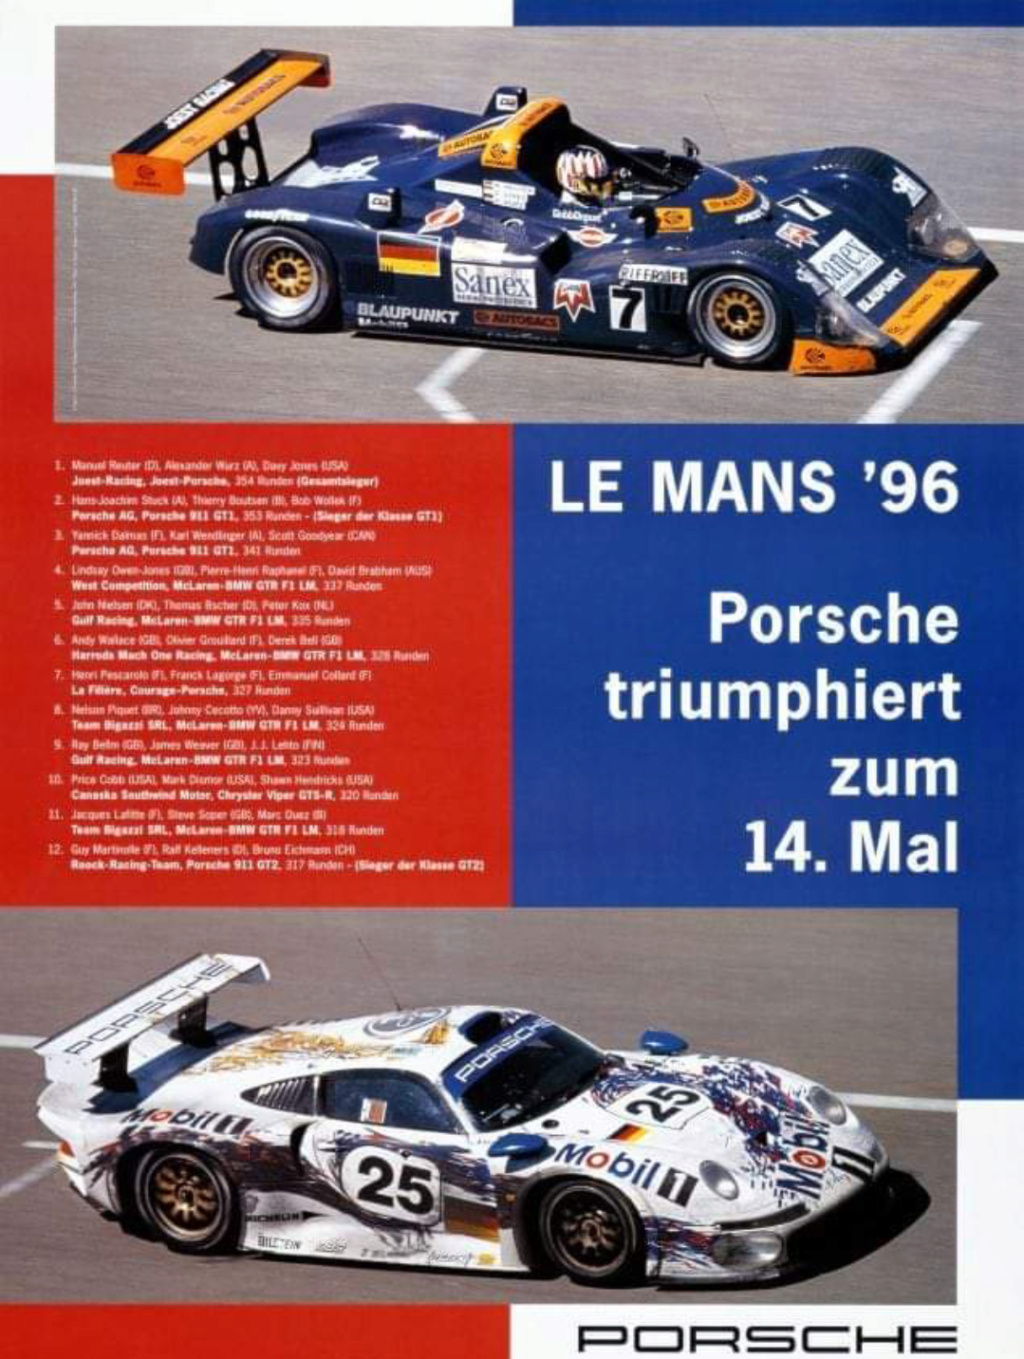 Affiches Porsche dans la course Automobile - Page 4 Scree945